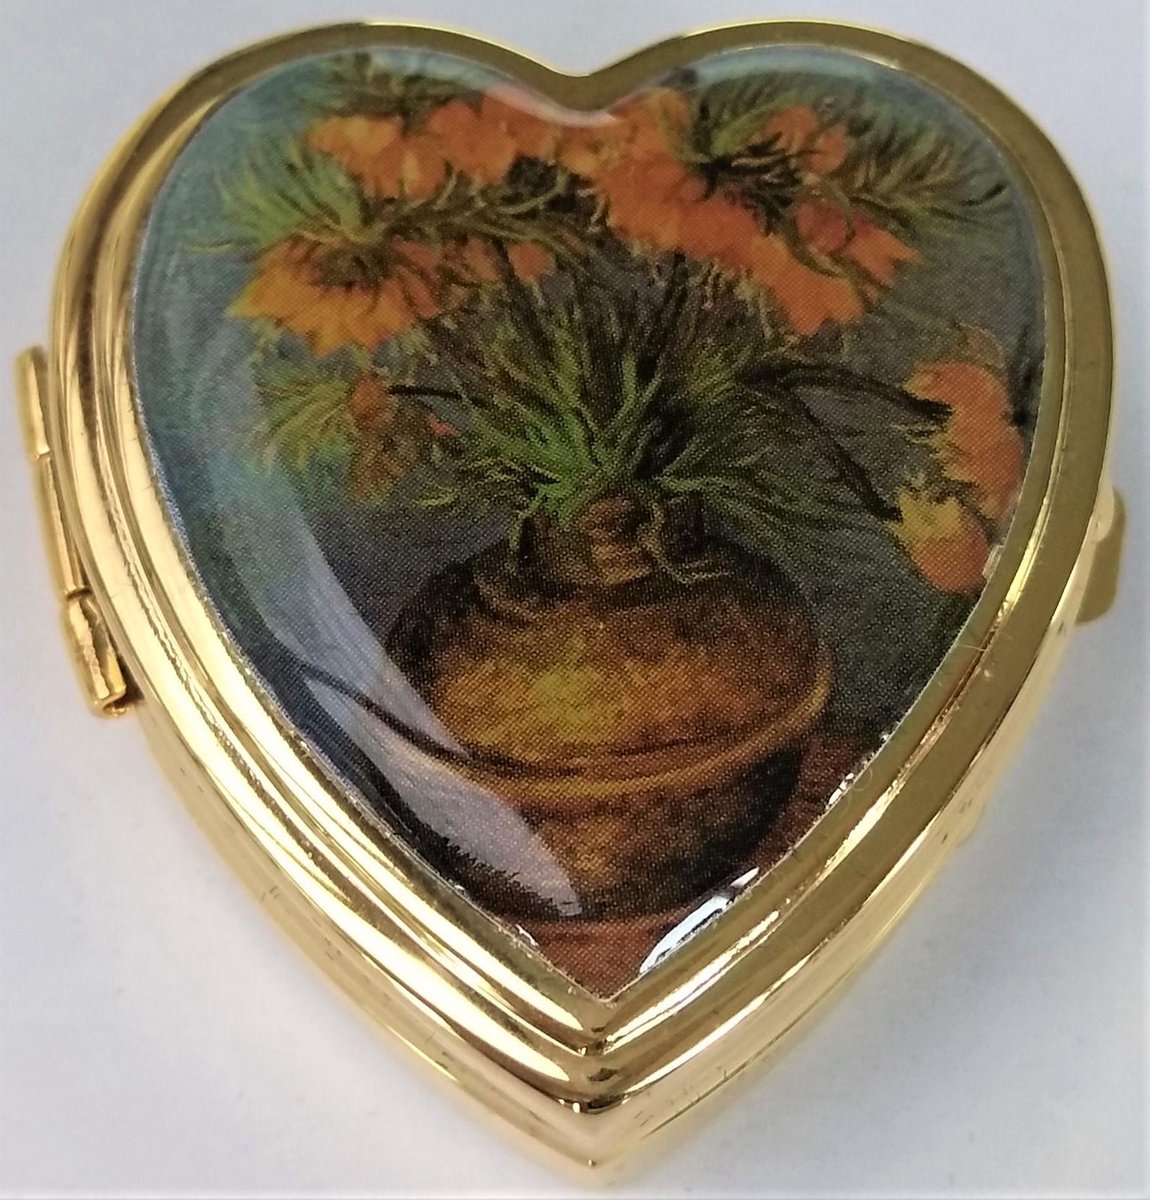 Zeeuws Meisje - Luxe Pillendoosje -hartvorm - messing verguld met echt laagje goud - afbeelding Keizerskroon oranje bloemen Vincent van Gogh